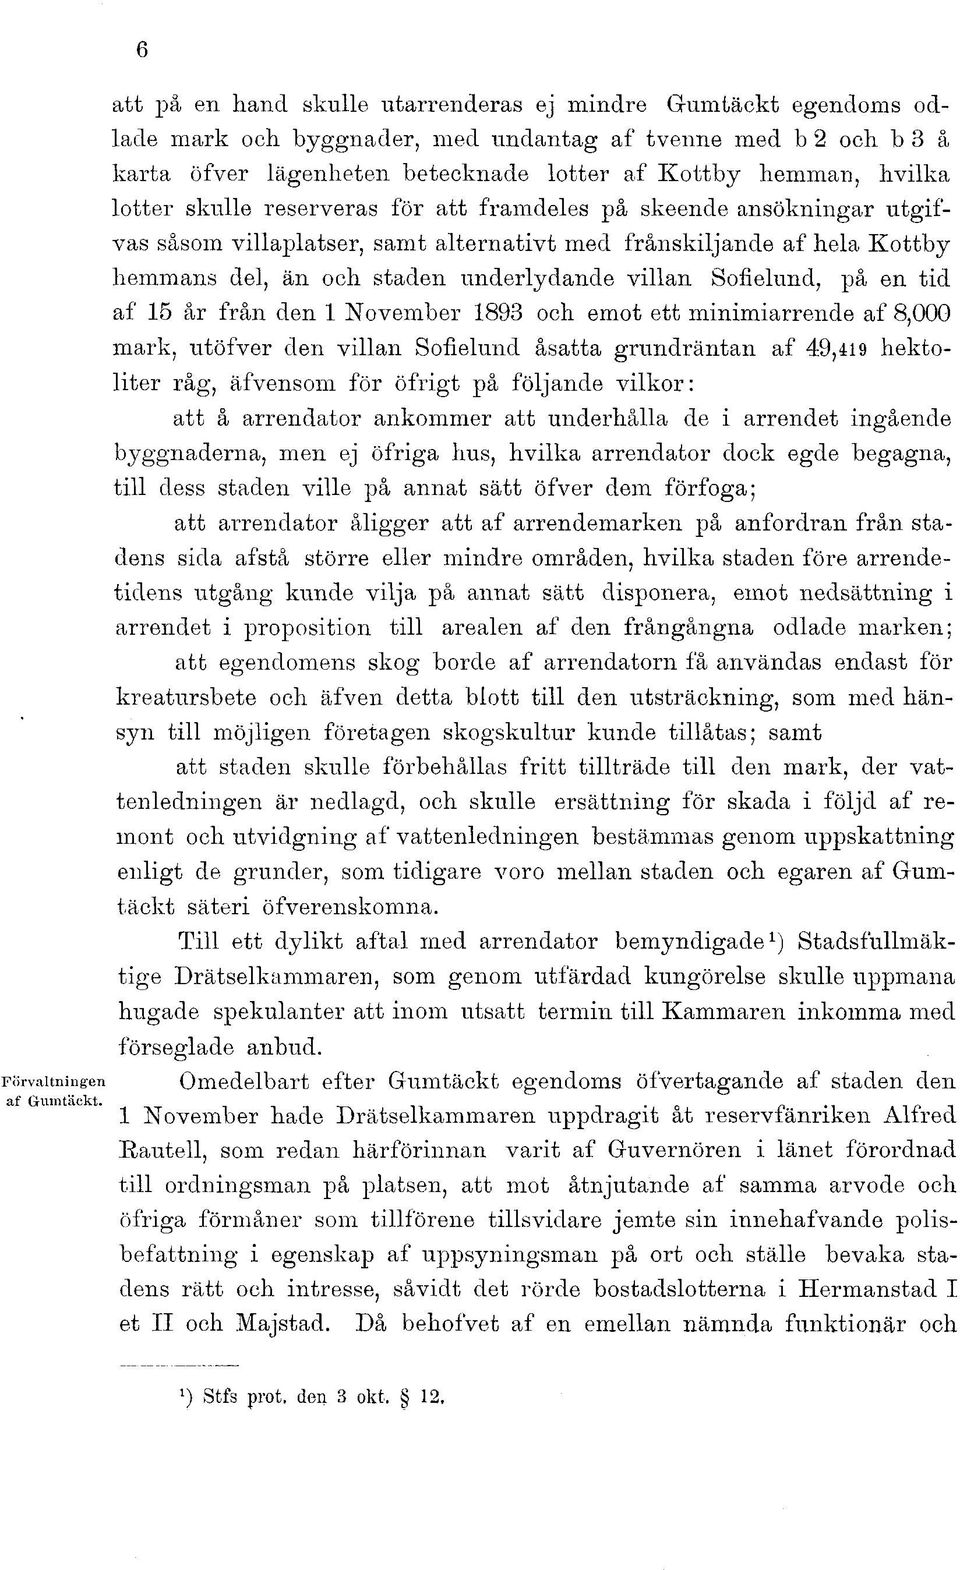 villan Sofielund, på en tid af 15 år från den 1 November 1893 och emot ett minimiarrende af 8,000 mark, utöfver den villan Sofielund åsatta grundräntan af 49,419 hektoliter råg, äfvensom för öfrigt